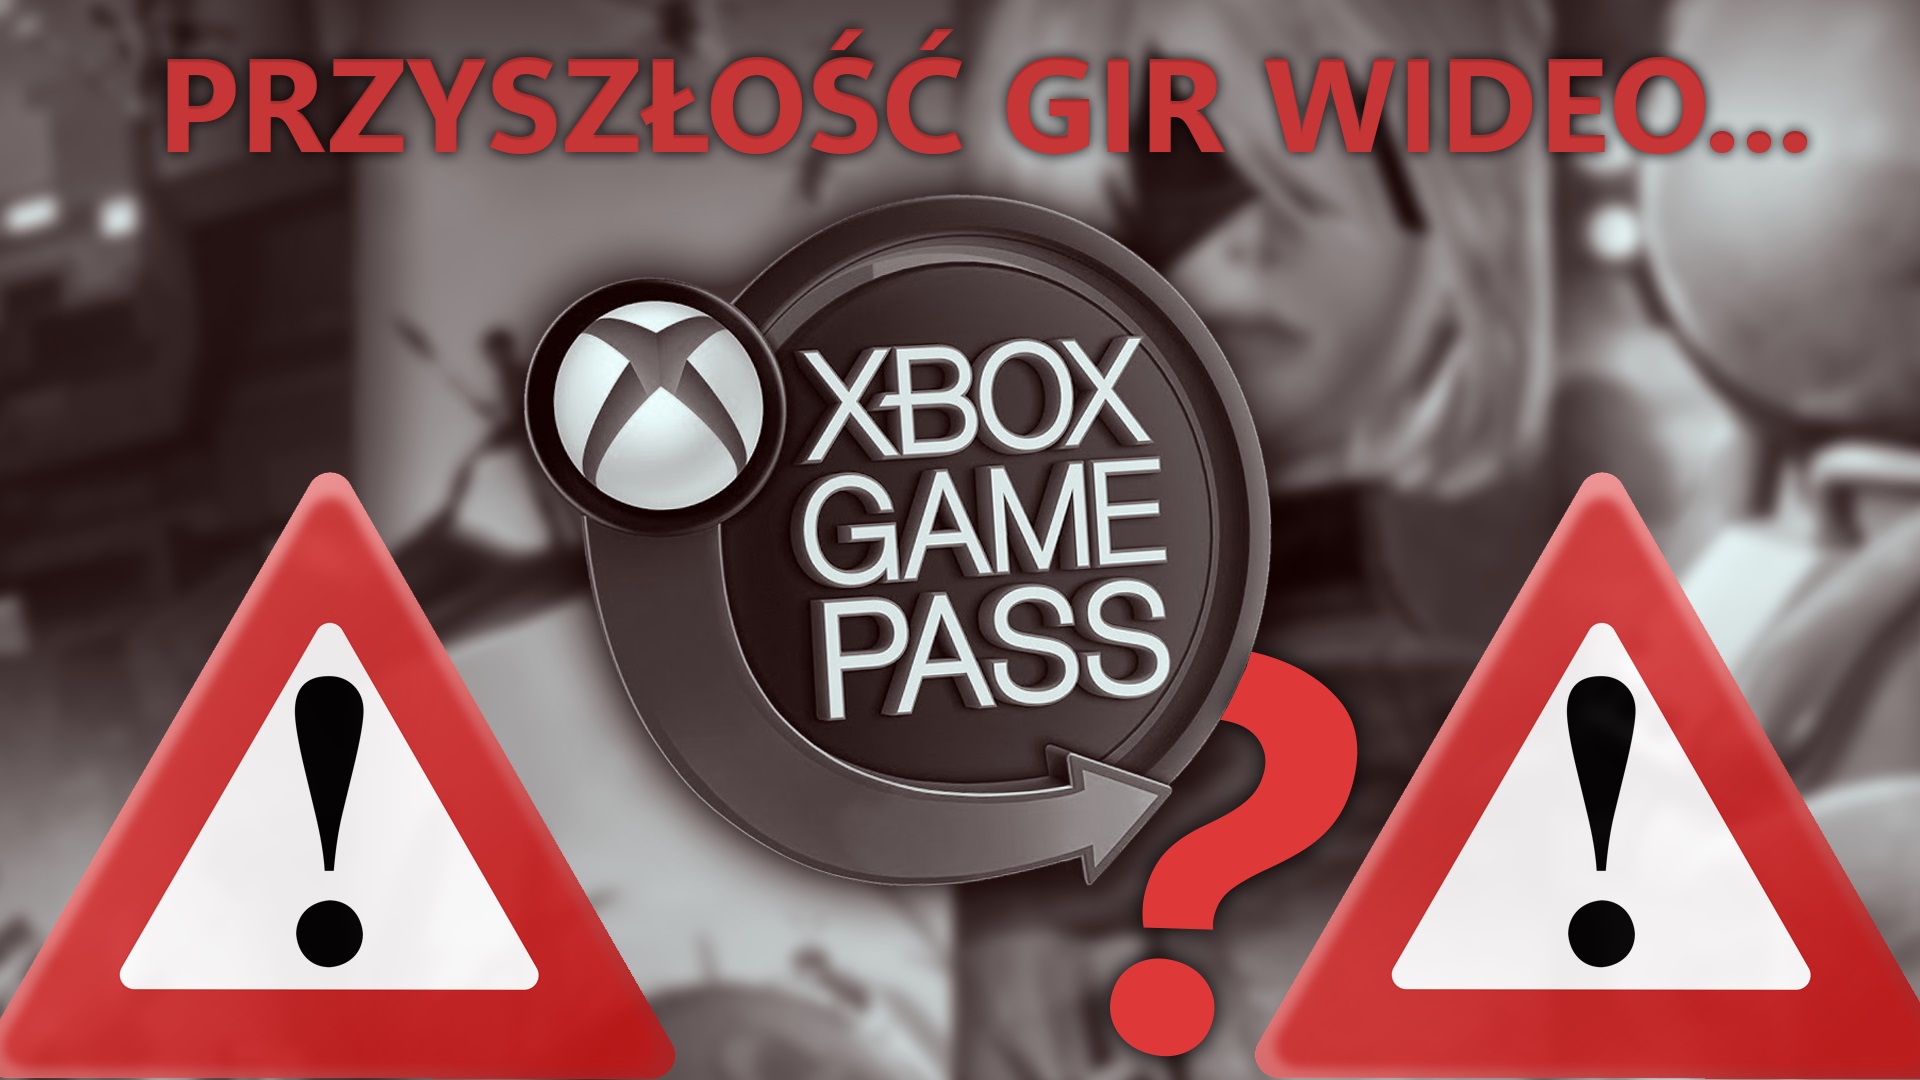 Czy Game Pass jest niebezpieczny? - Analiza przyszłości gier wideo